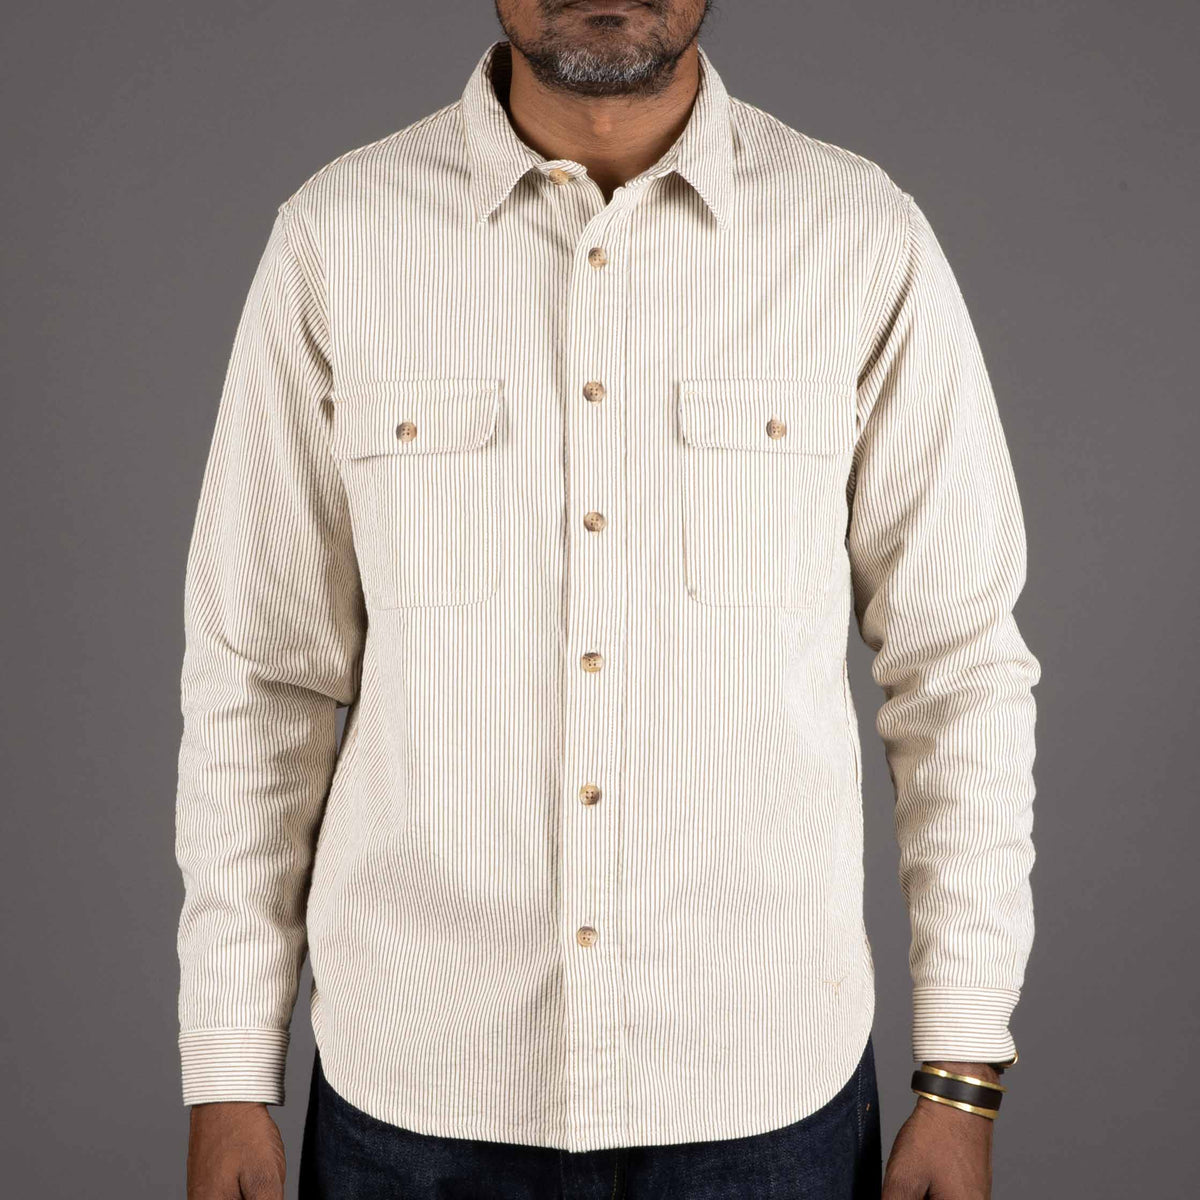 Work Shirt 6.5 oz. brown & white cord stripe